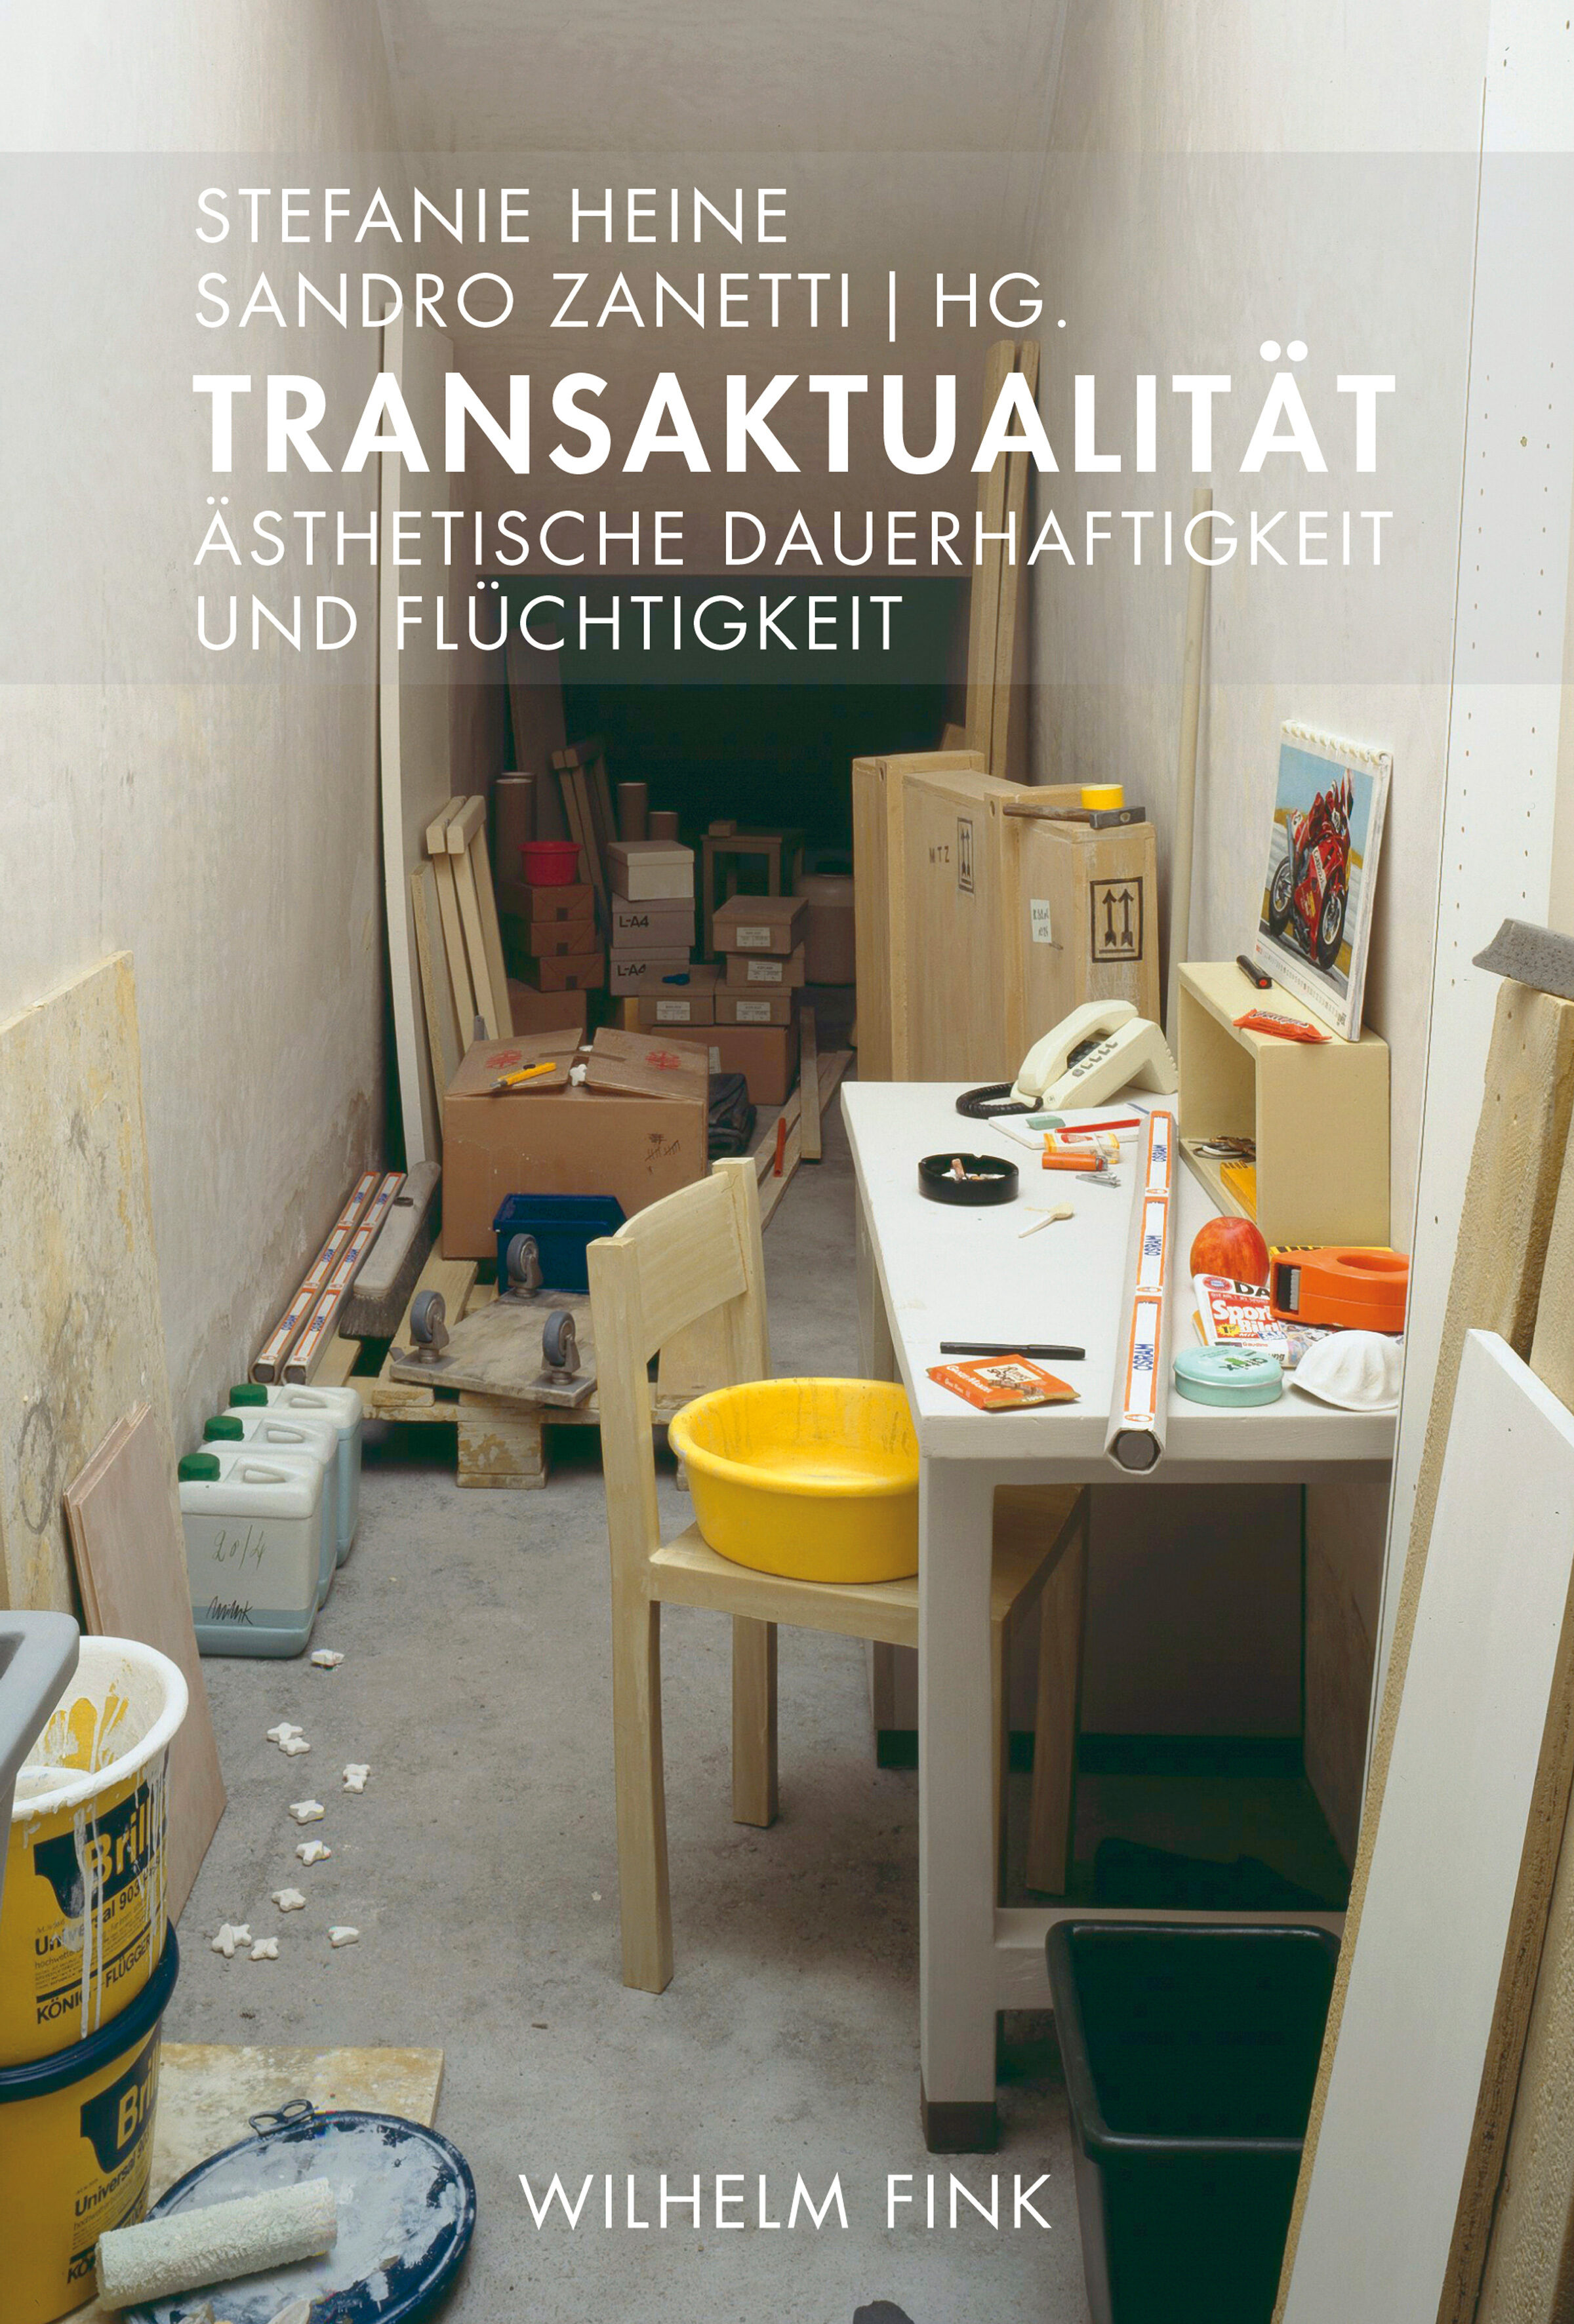 transaktualität, Stefanie Heine, Sandro Zanetti, gesellschaft, kunst, sachbuch